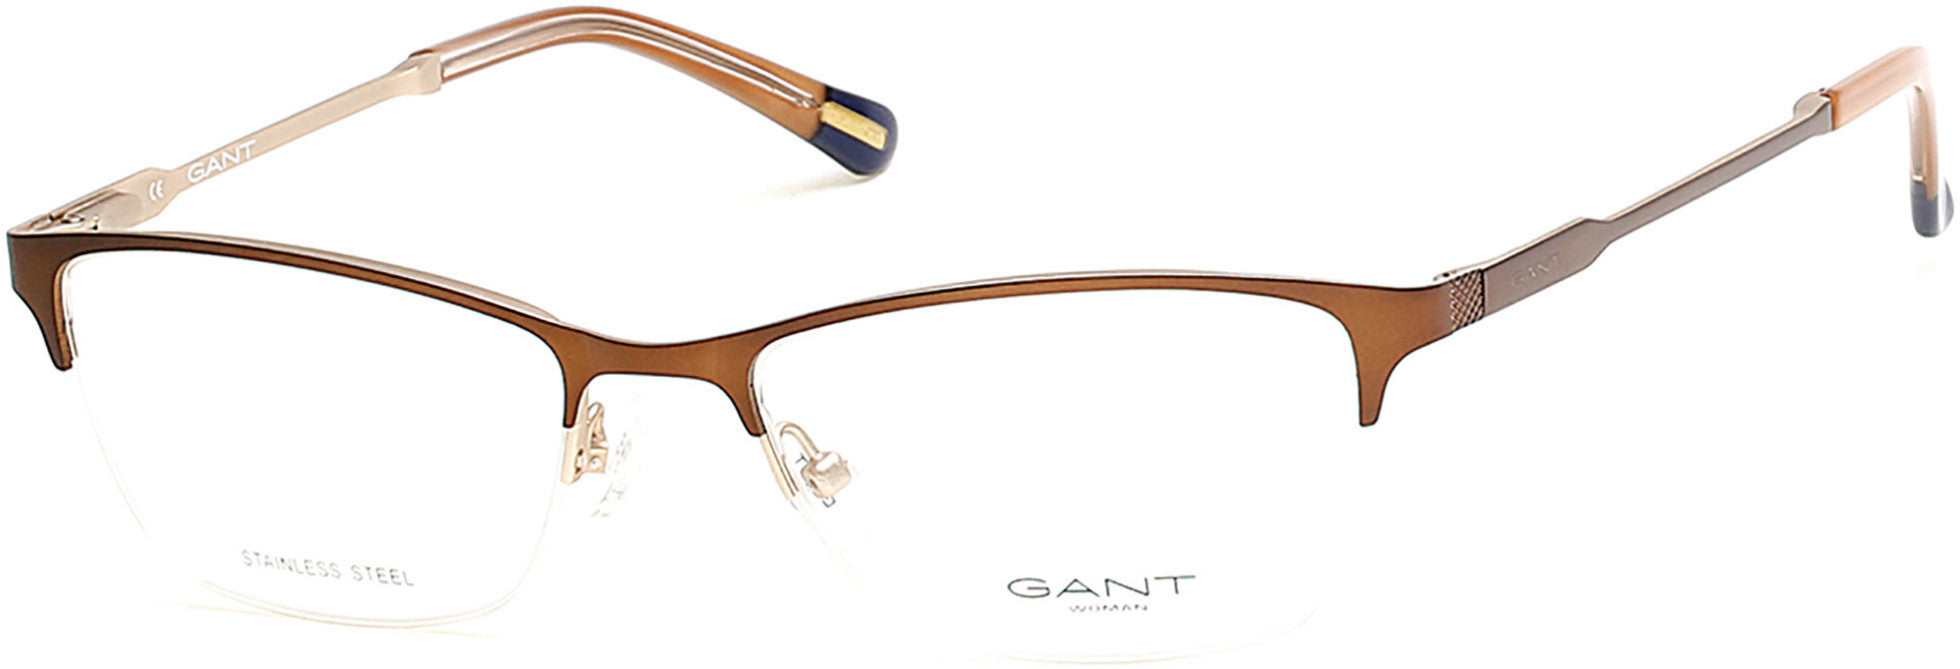 Gant GA4067 Rectangular Eyeglasses 049-049 - Matte Dark Brown